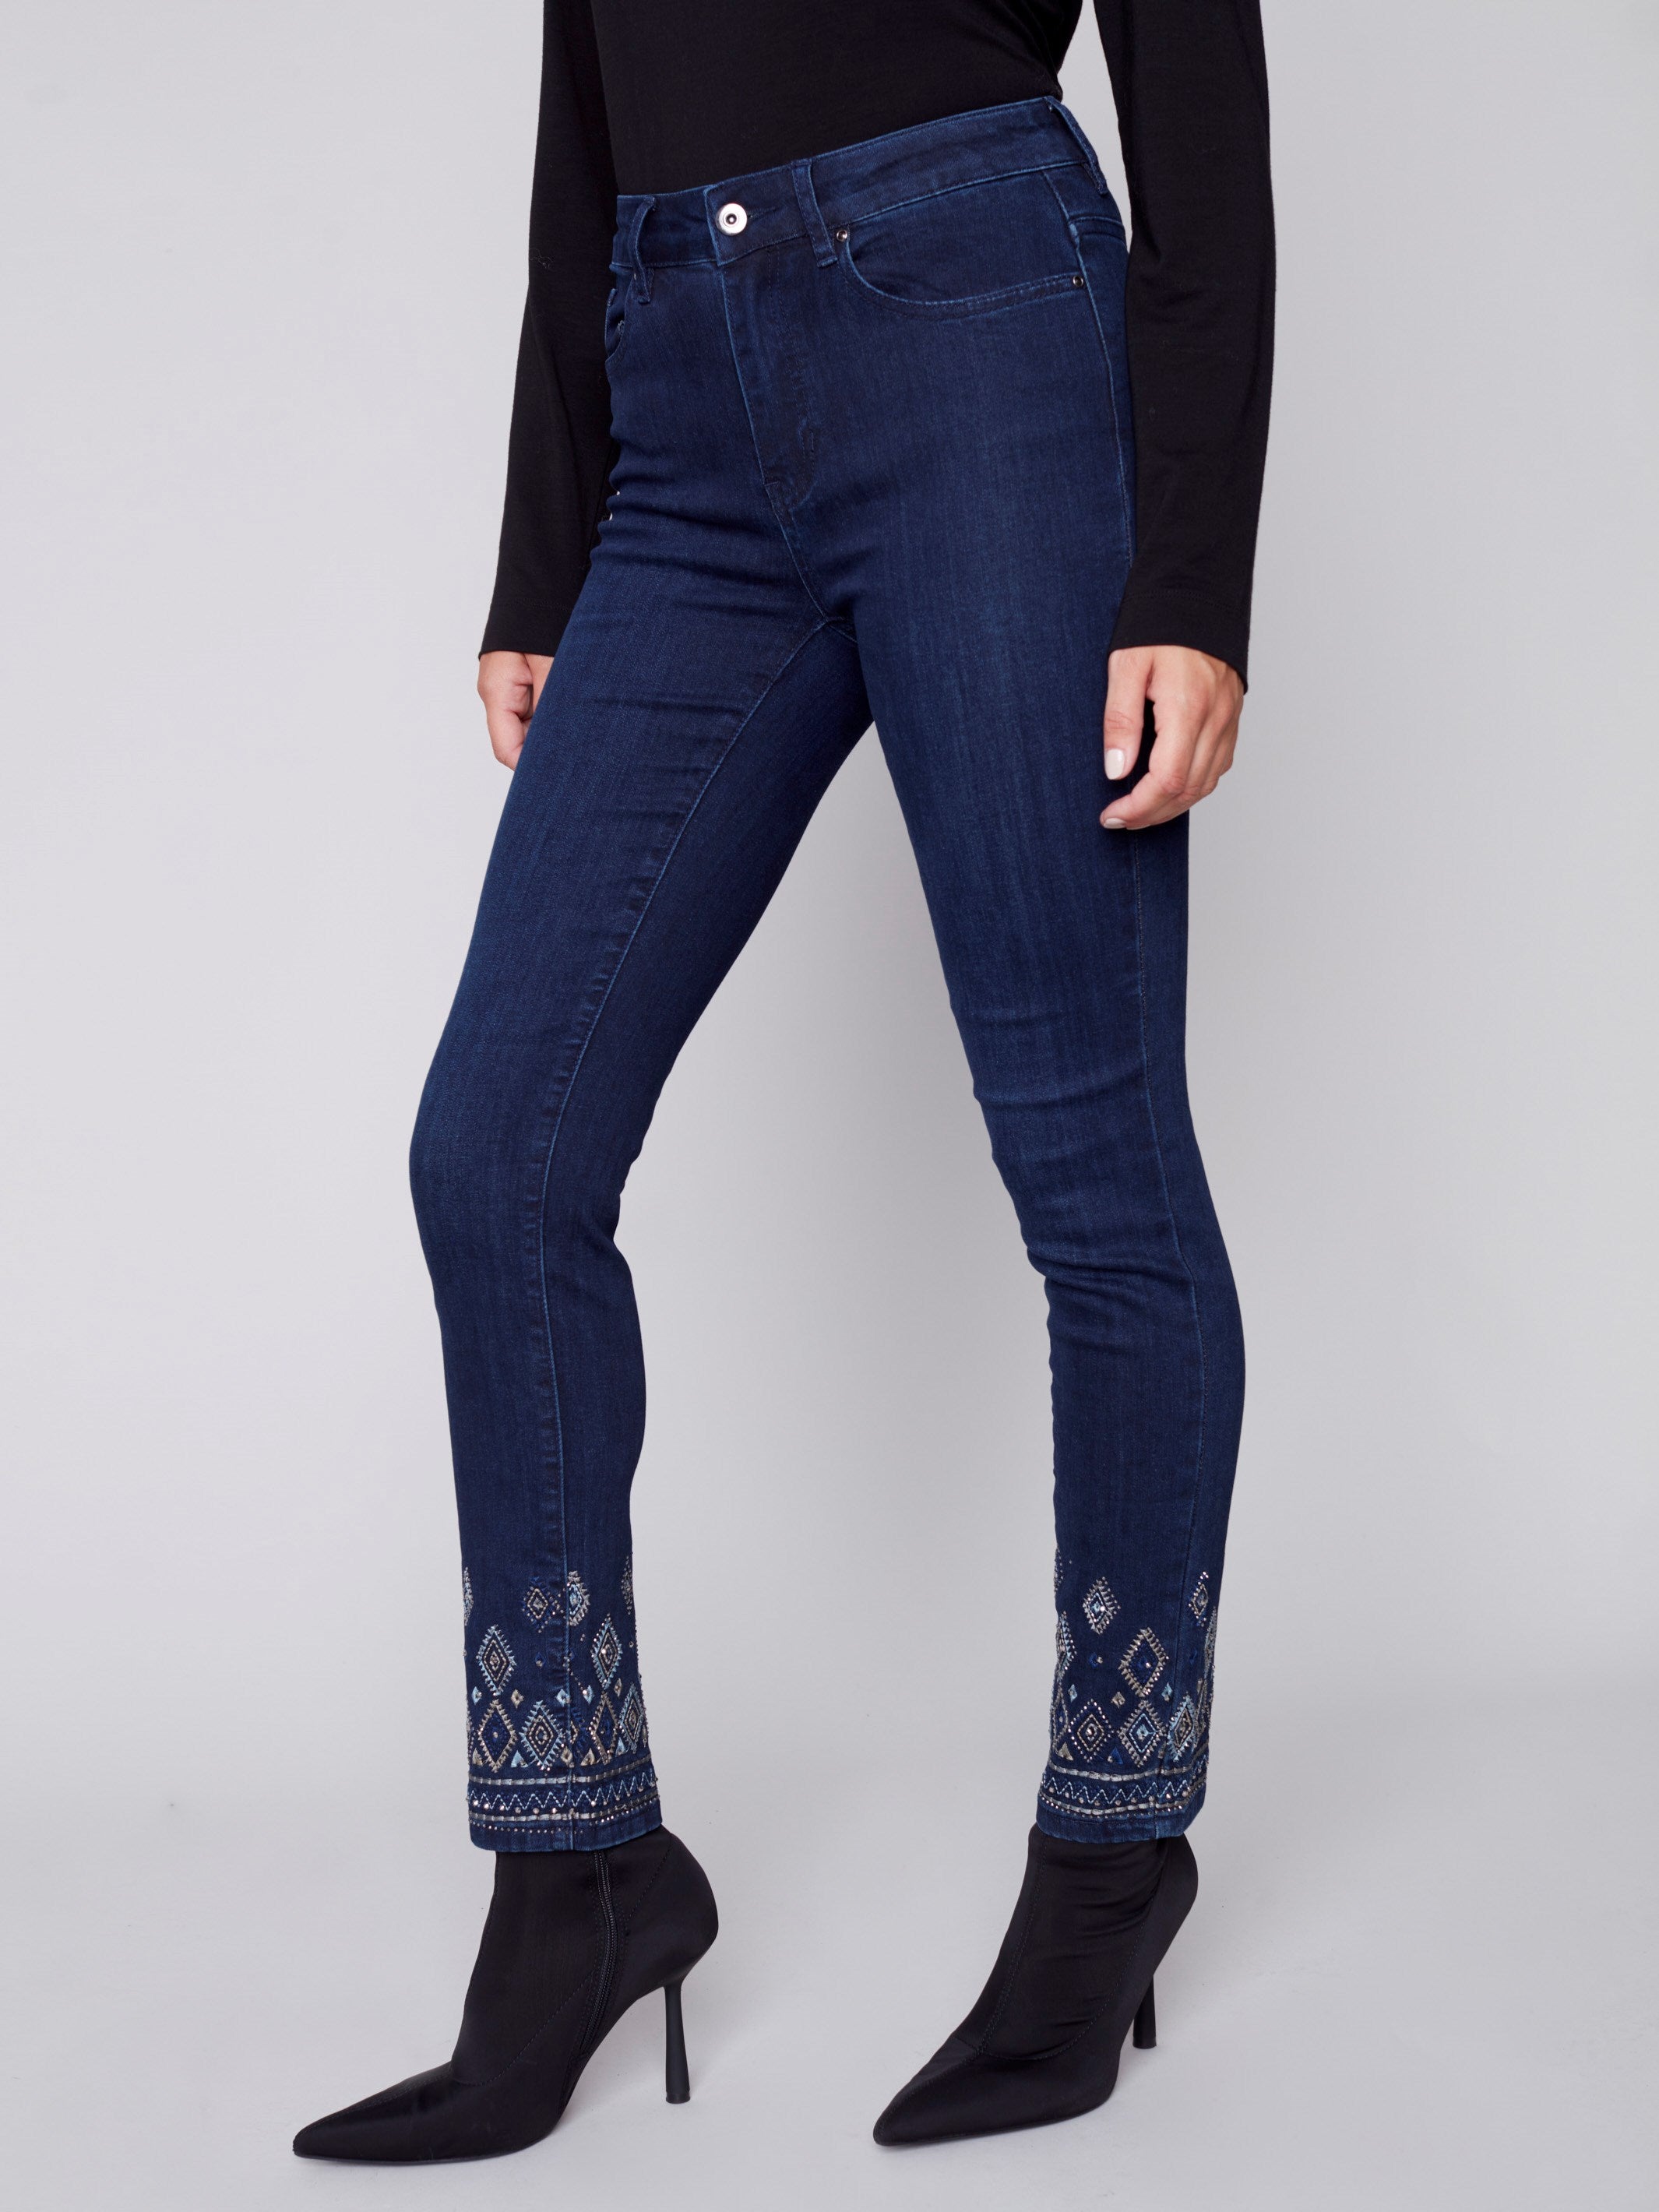 Jeans à jambe étroite avec broderie géométrique - Bleu noir